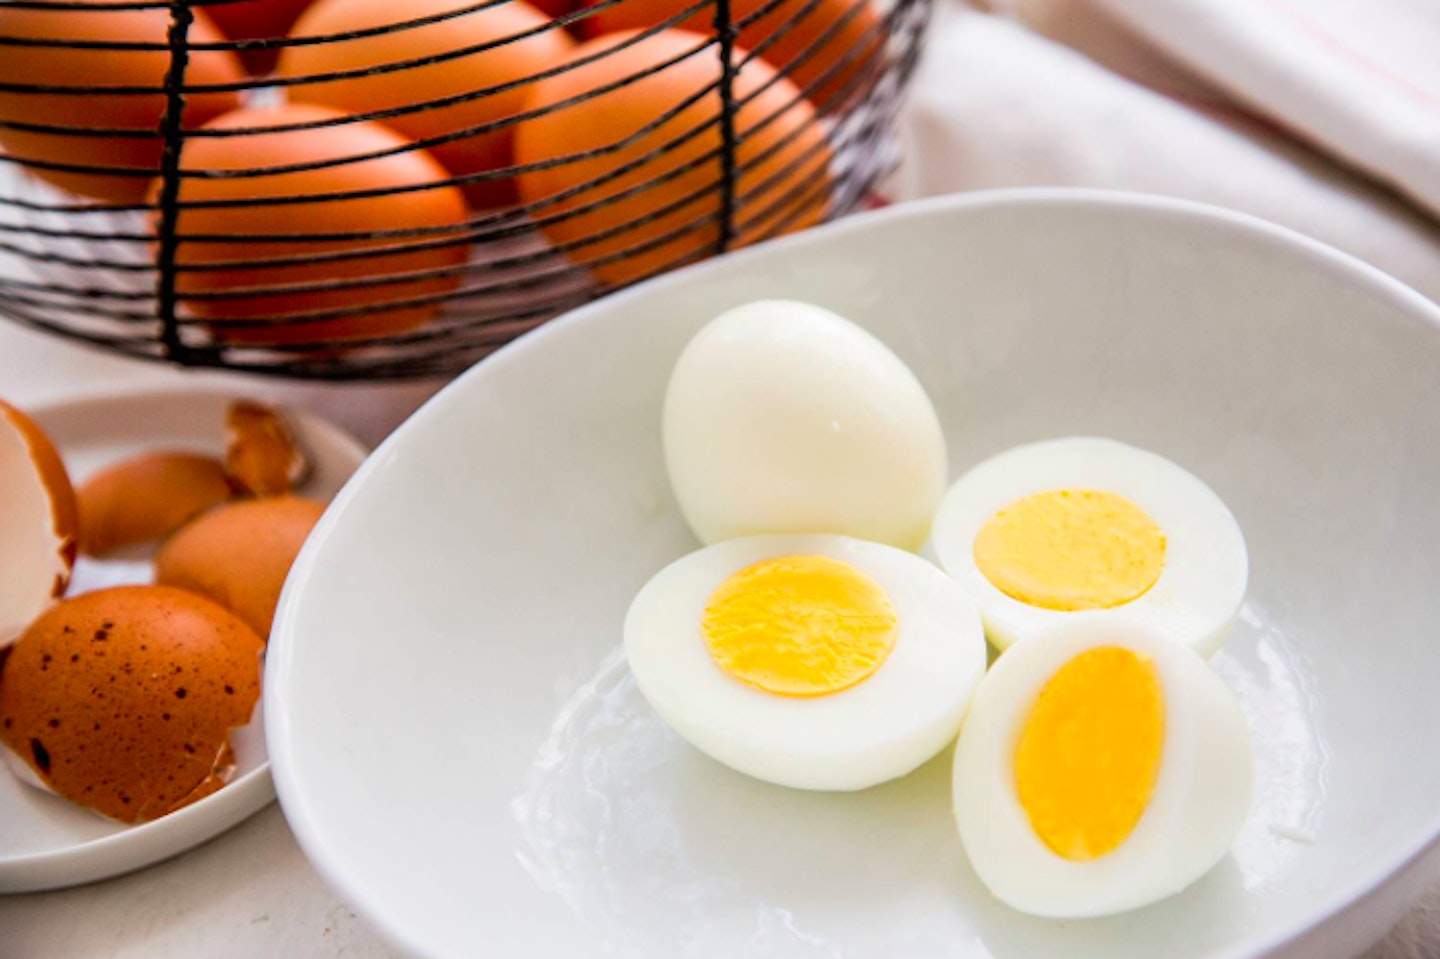 Boiled eggs military diet